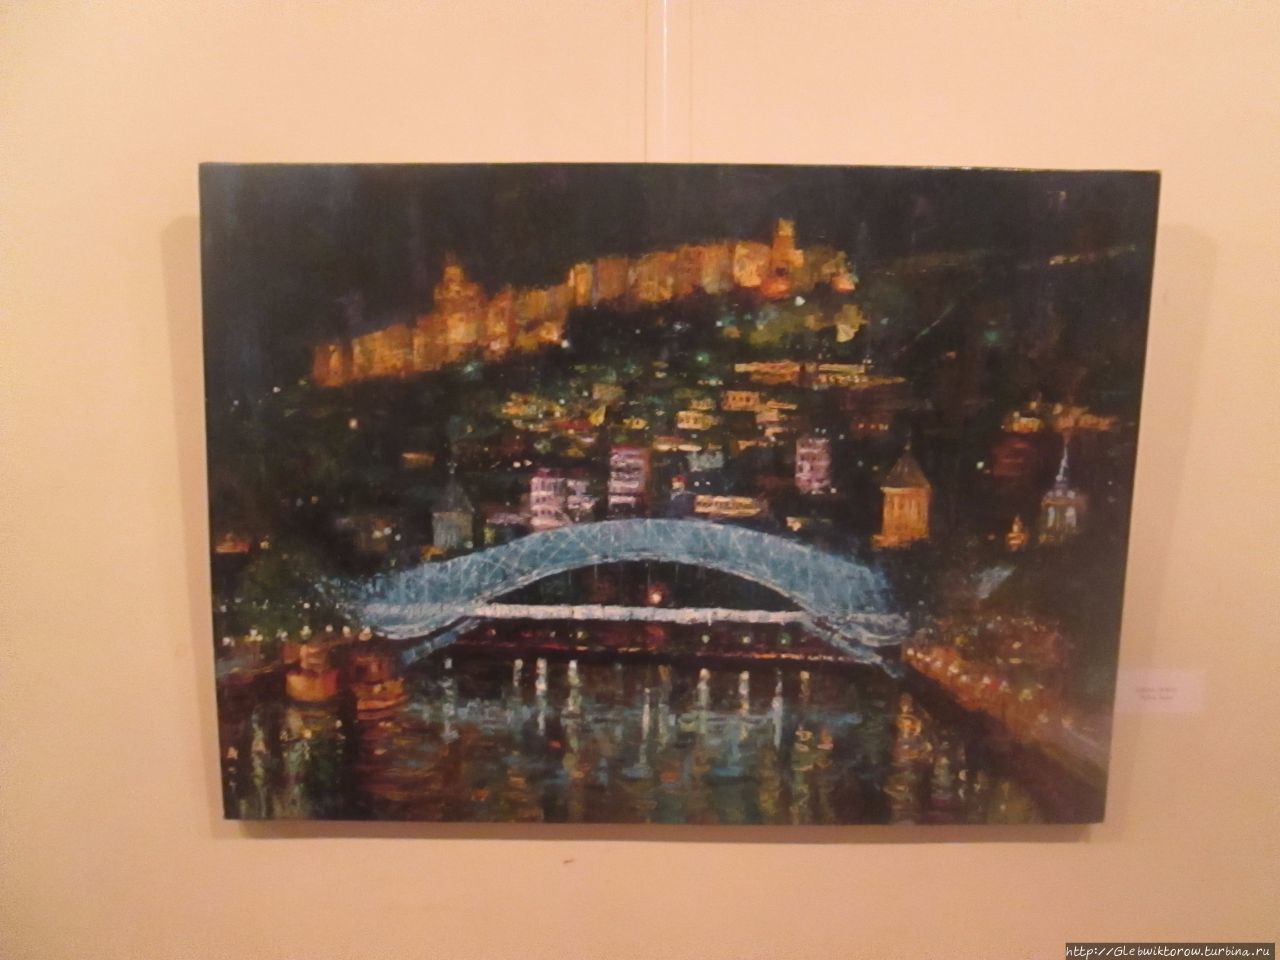 Аджарский художественный музей Батуми, Грузия